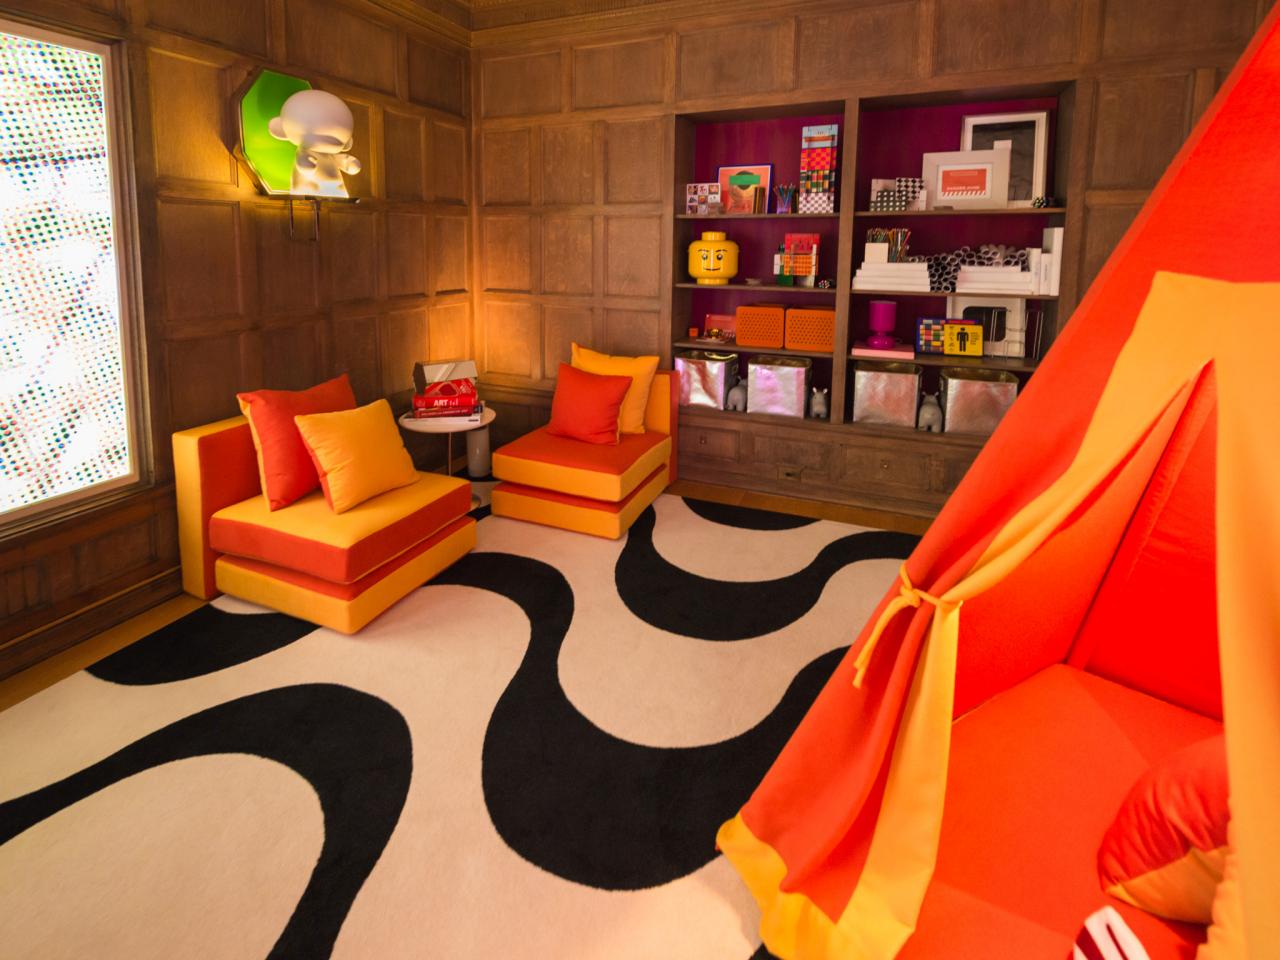 design chambre garçon ado cool moderne orange décoration design lego canapé orange jaune bibliothèque tente lit